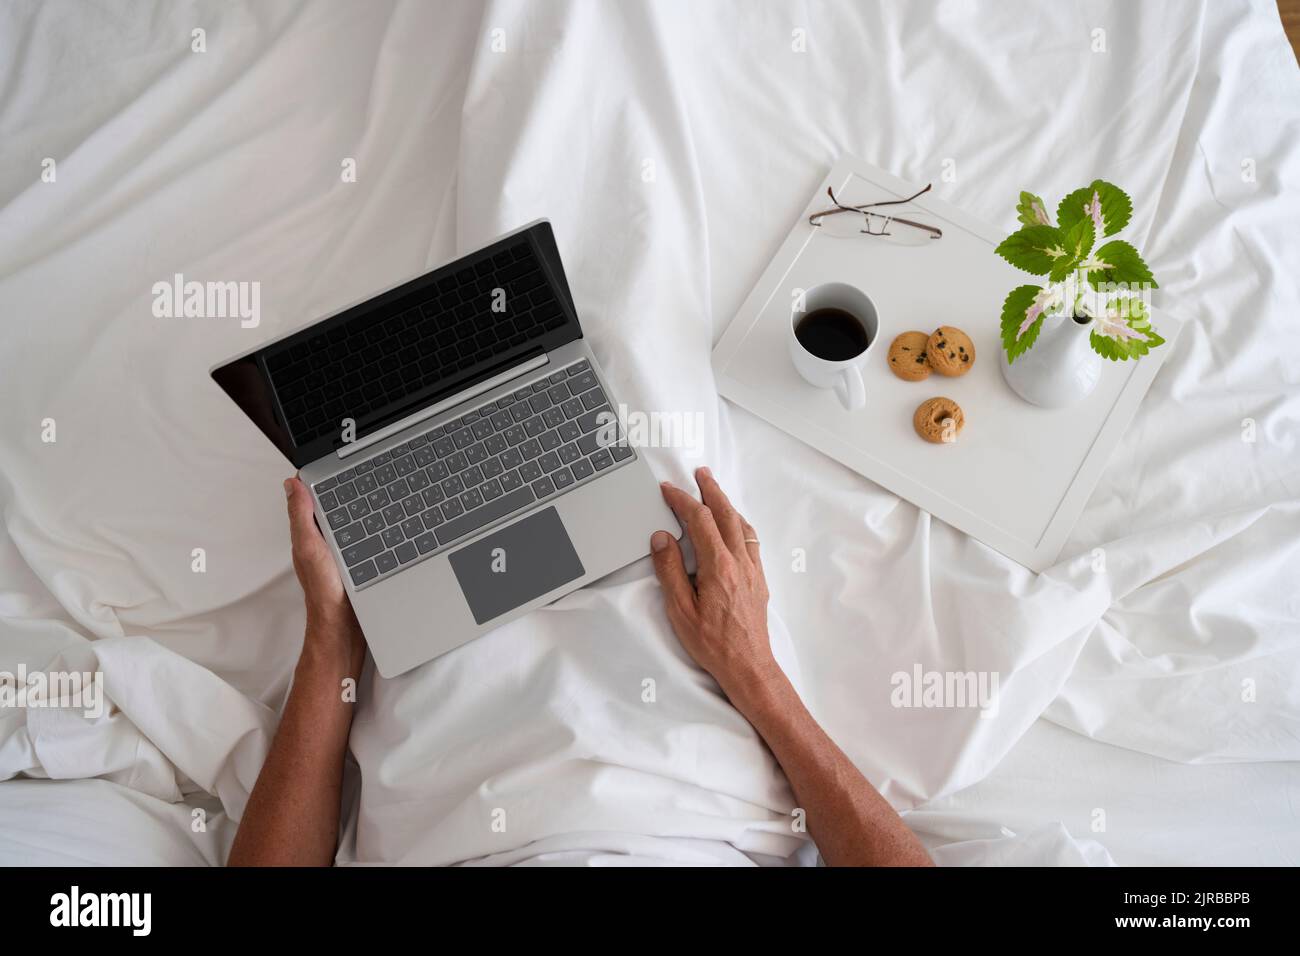 Hände eines Mannes mit Laptop und Frühstück auf dem Bett Stockfoto